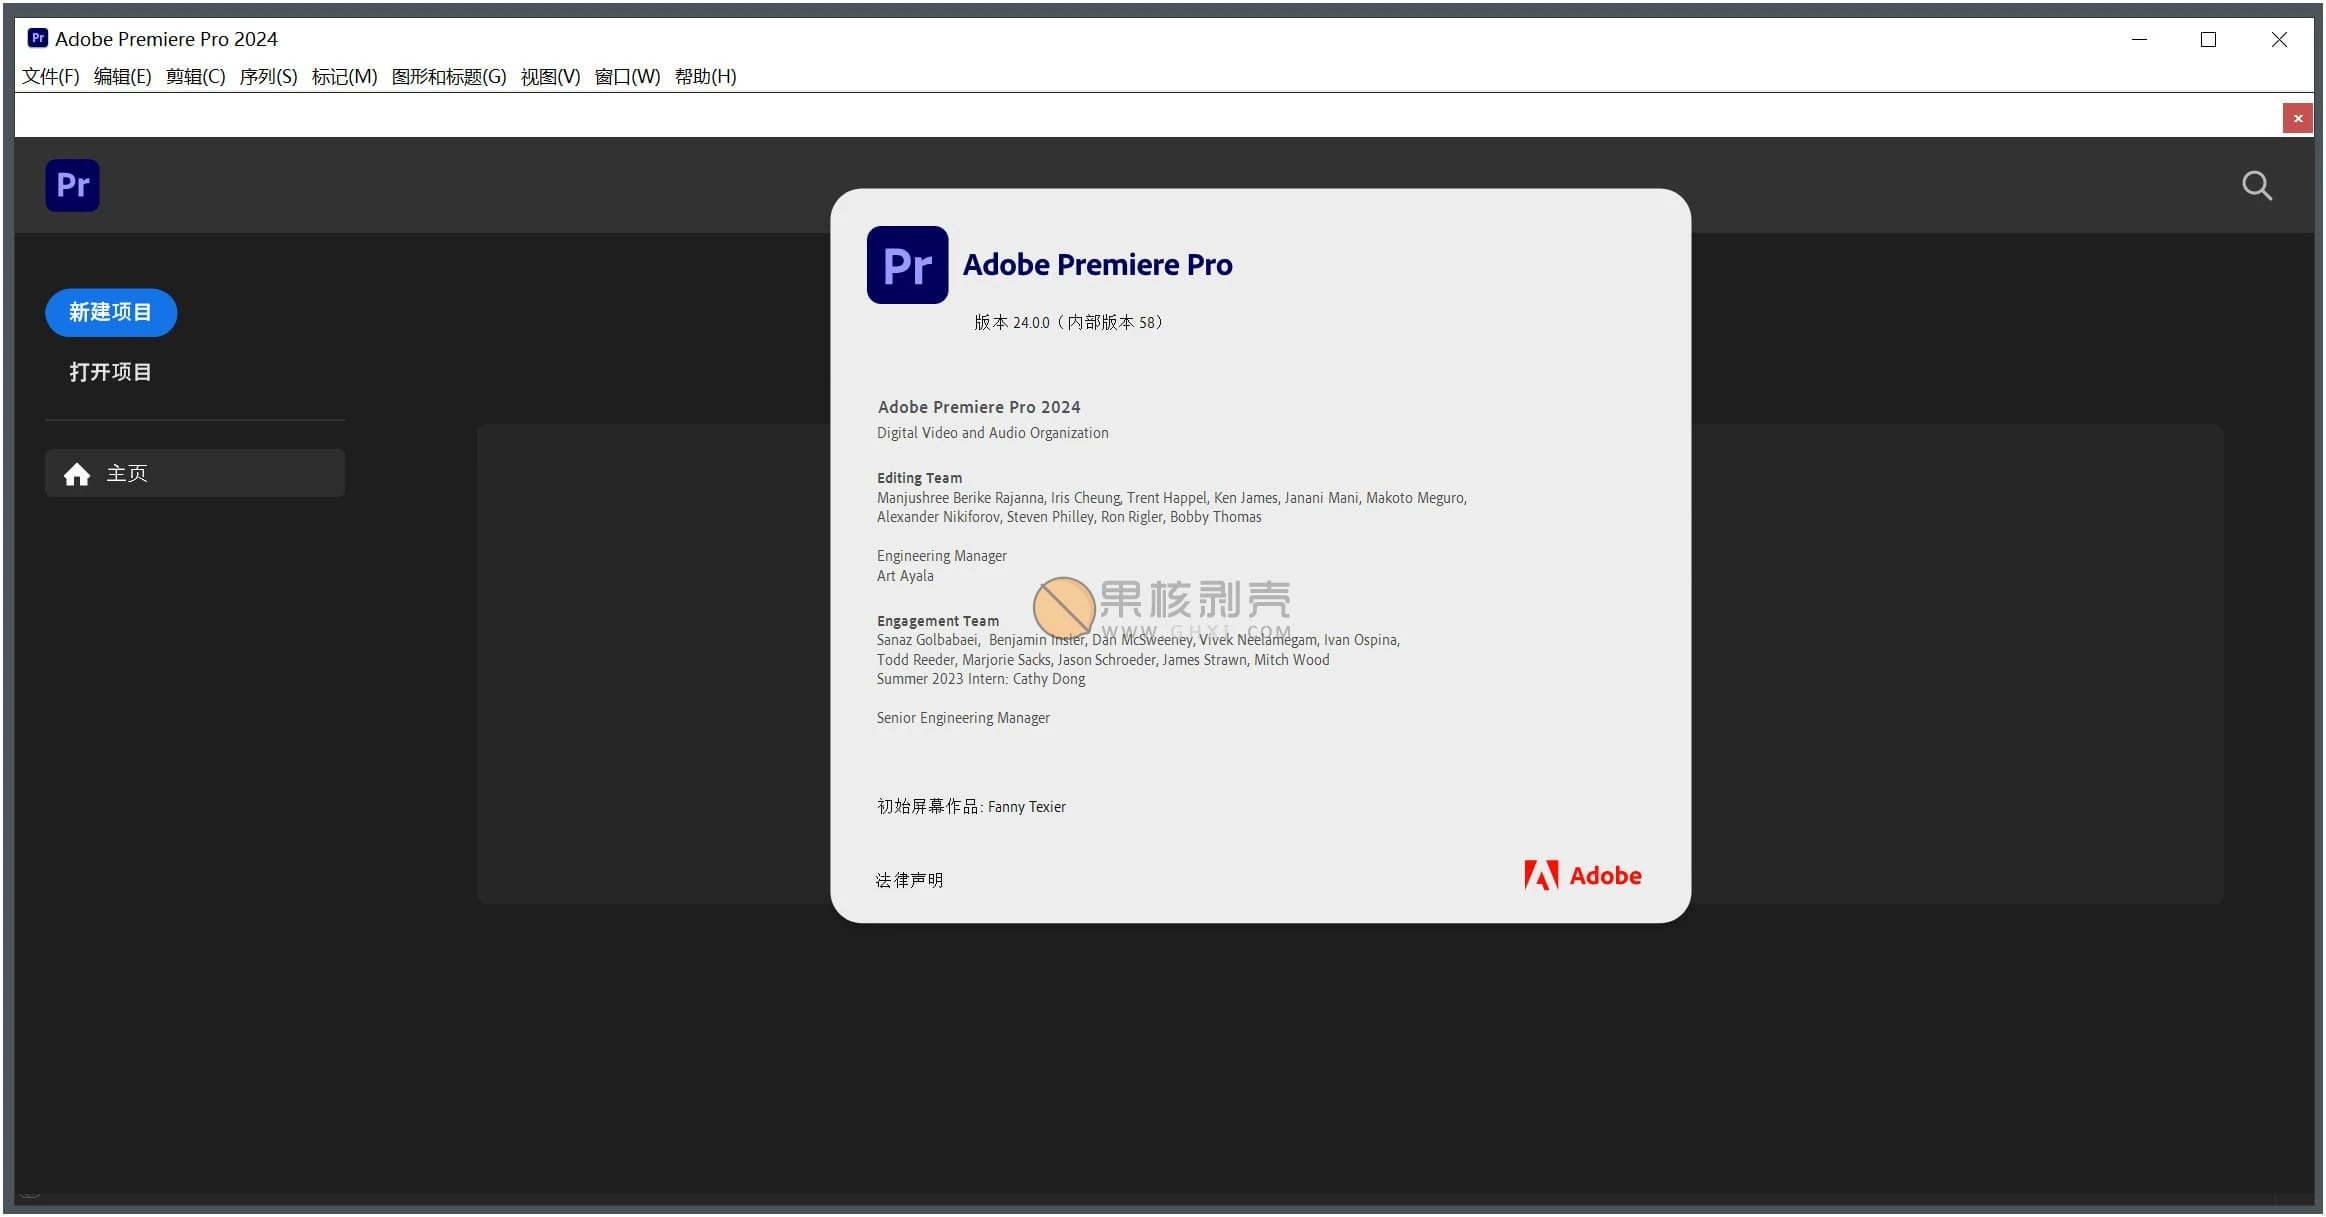 Adobe Premiere Pro 2024 (24.4.1) 特别版